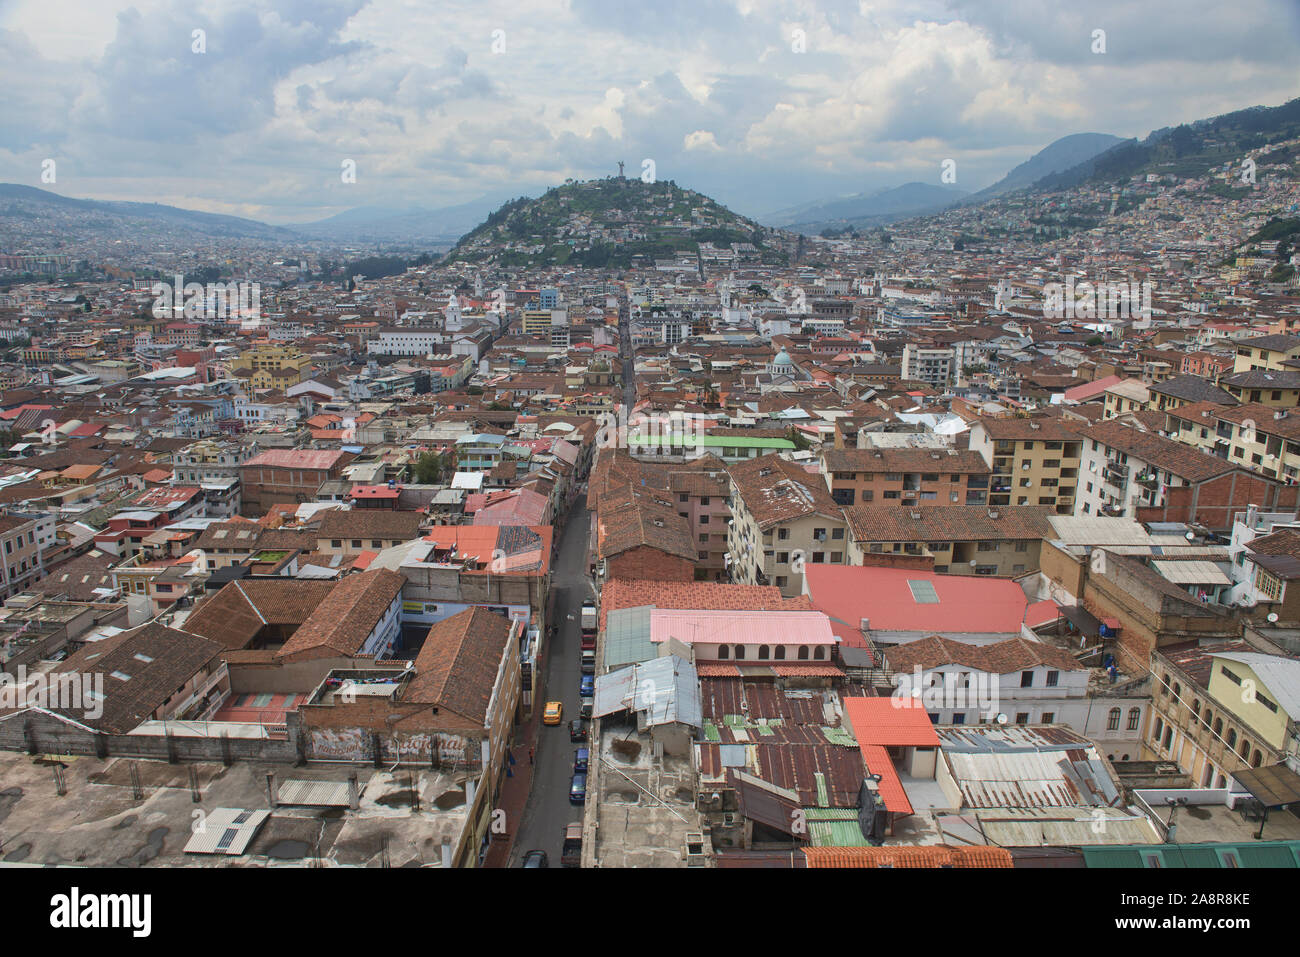 Views over the historic Old Town Quito, Ecuador Stock Photo